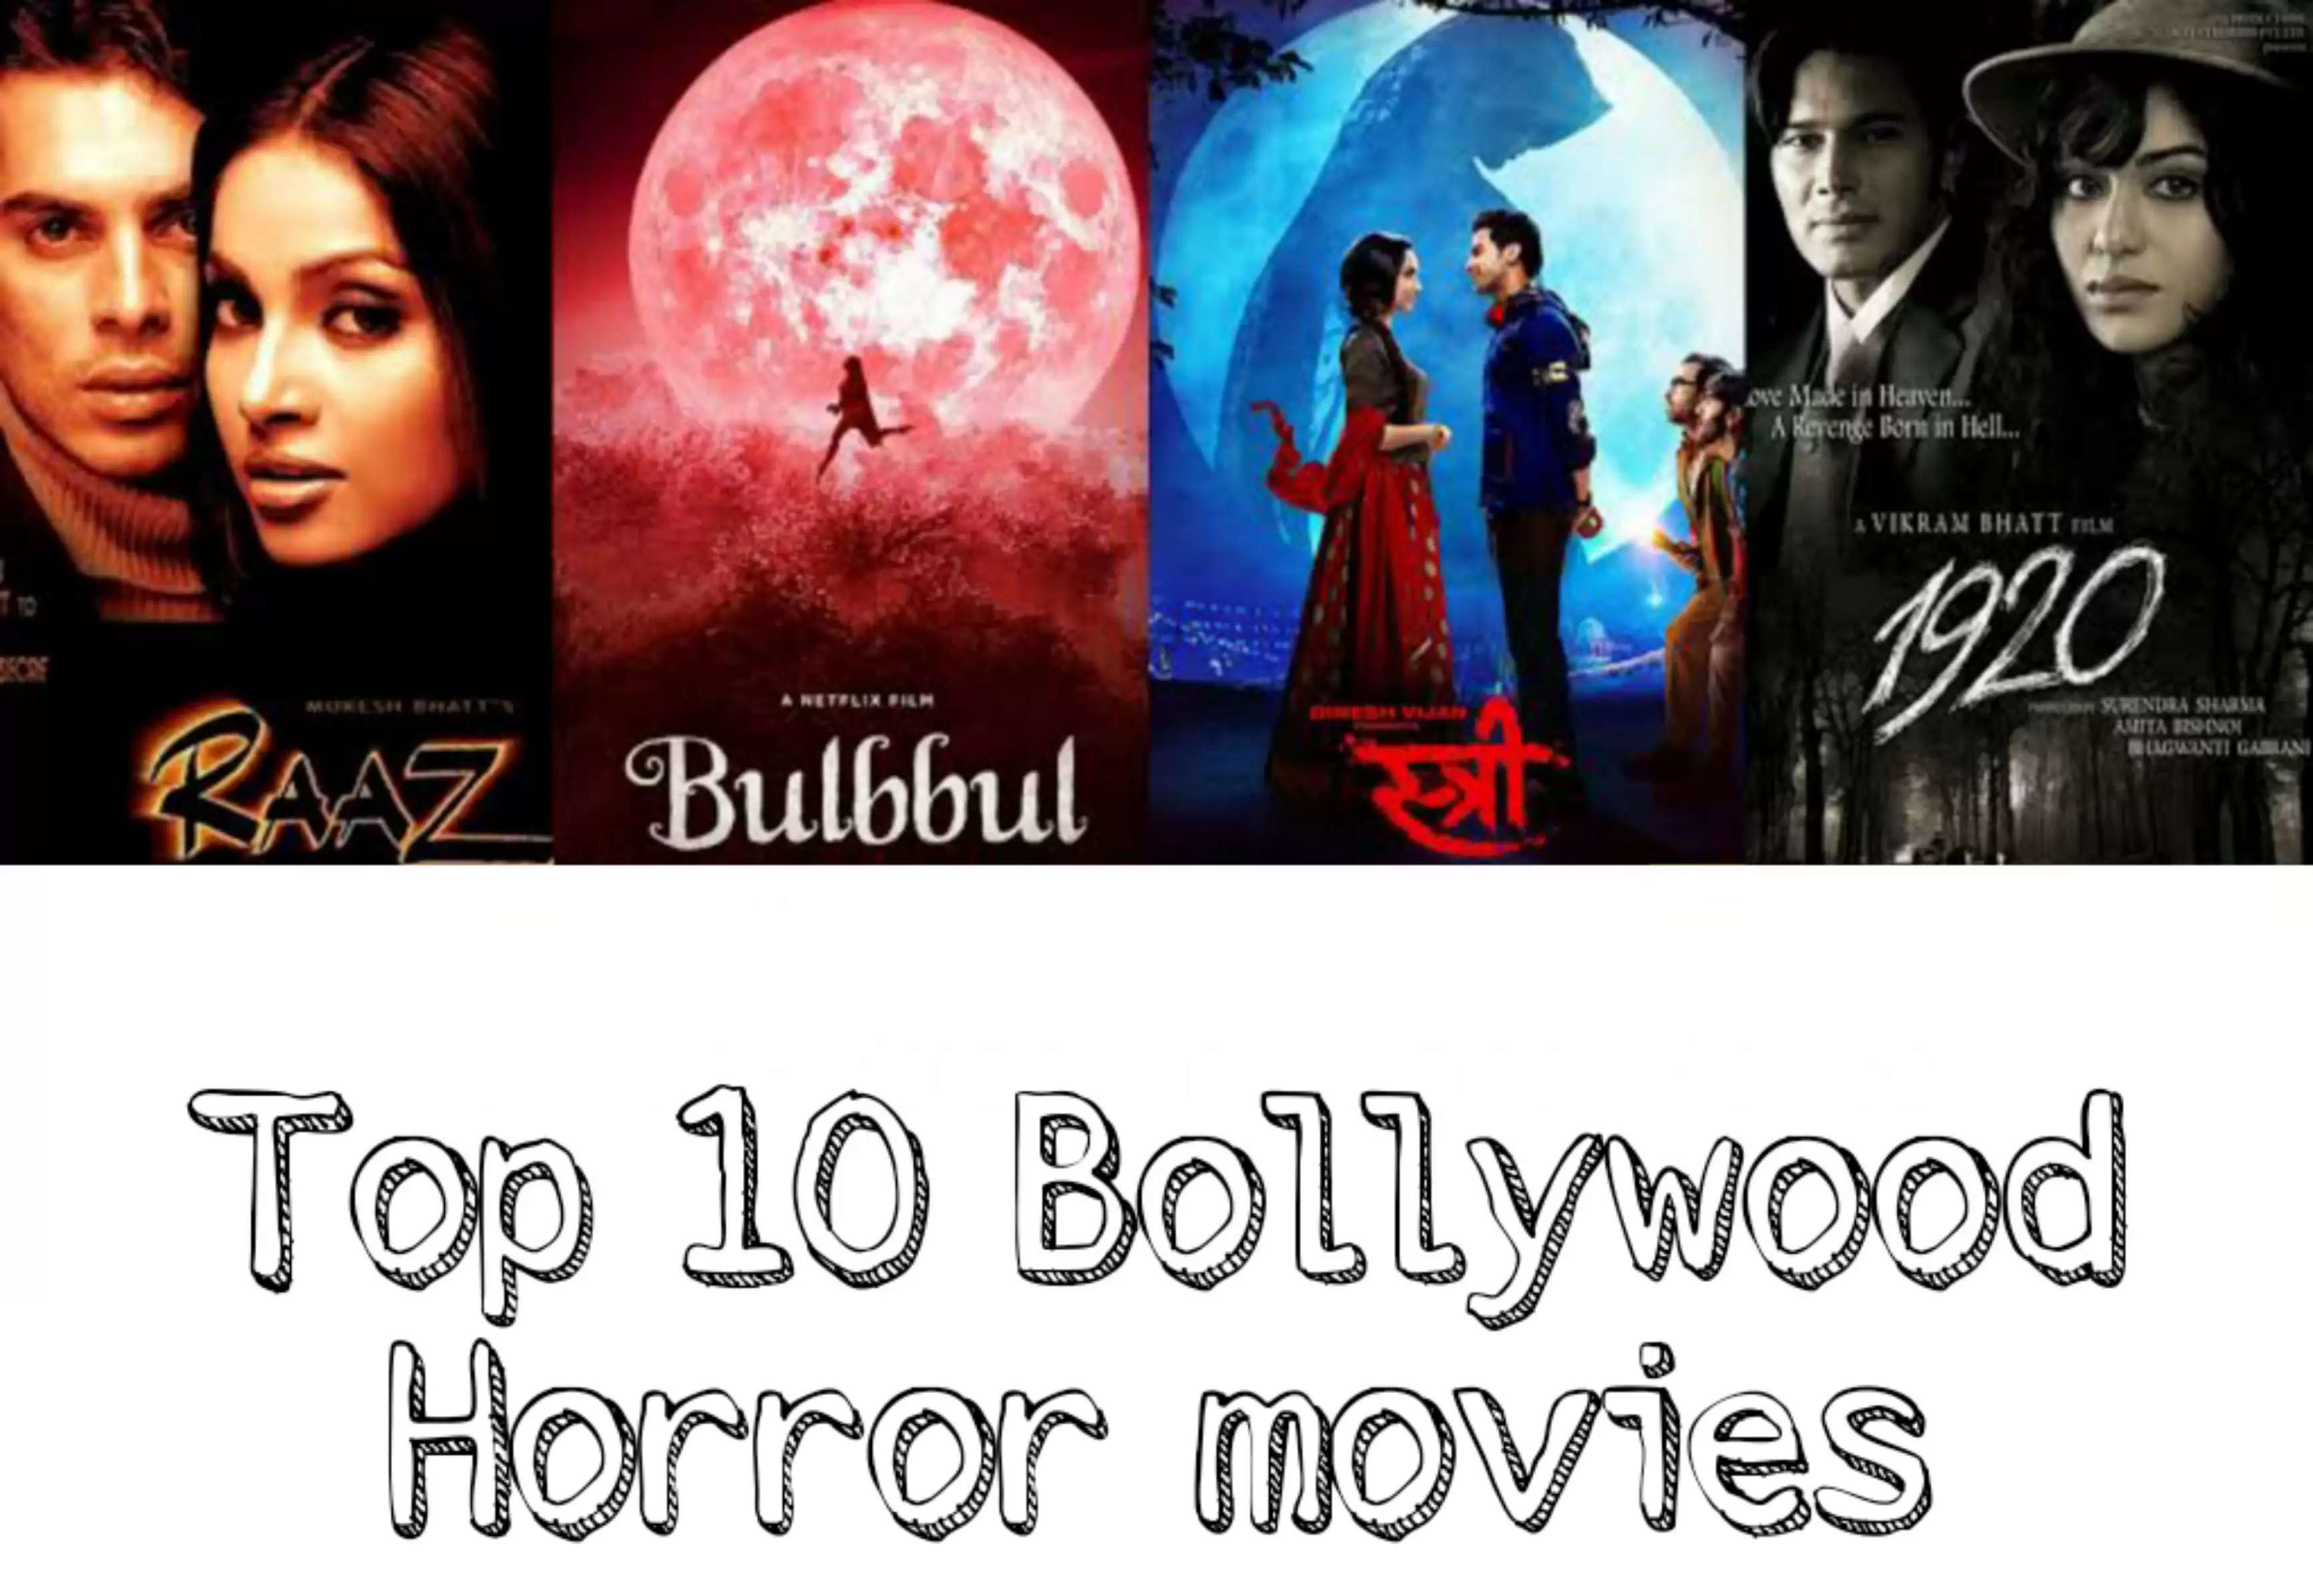 Bollywood's Horror Movies